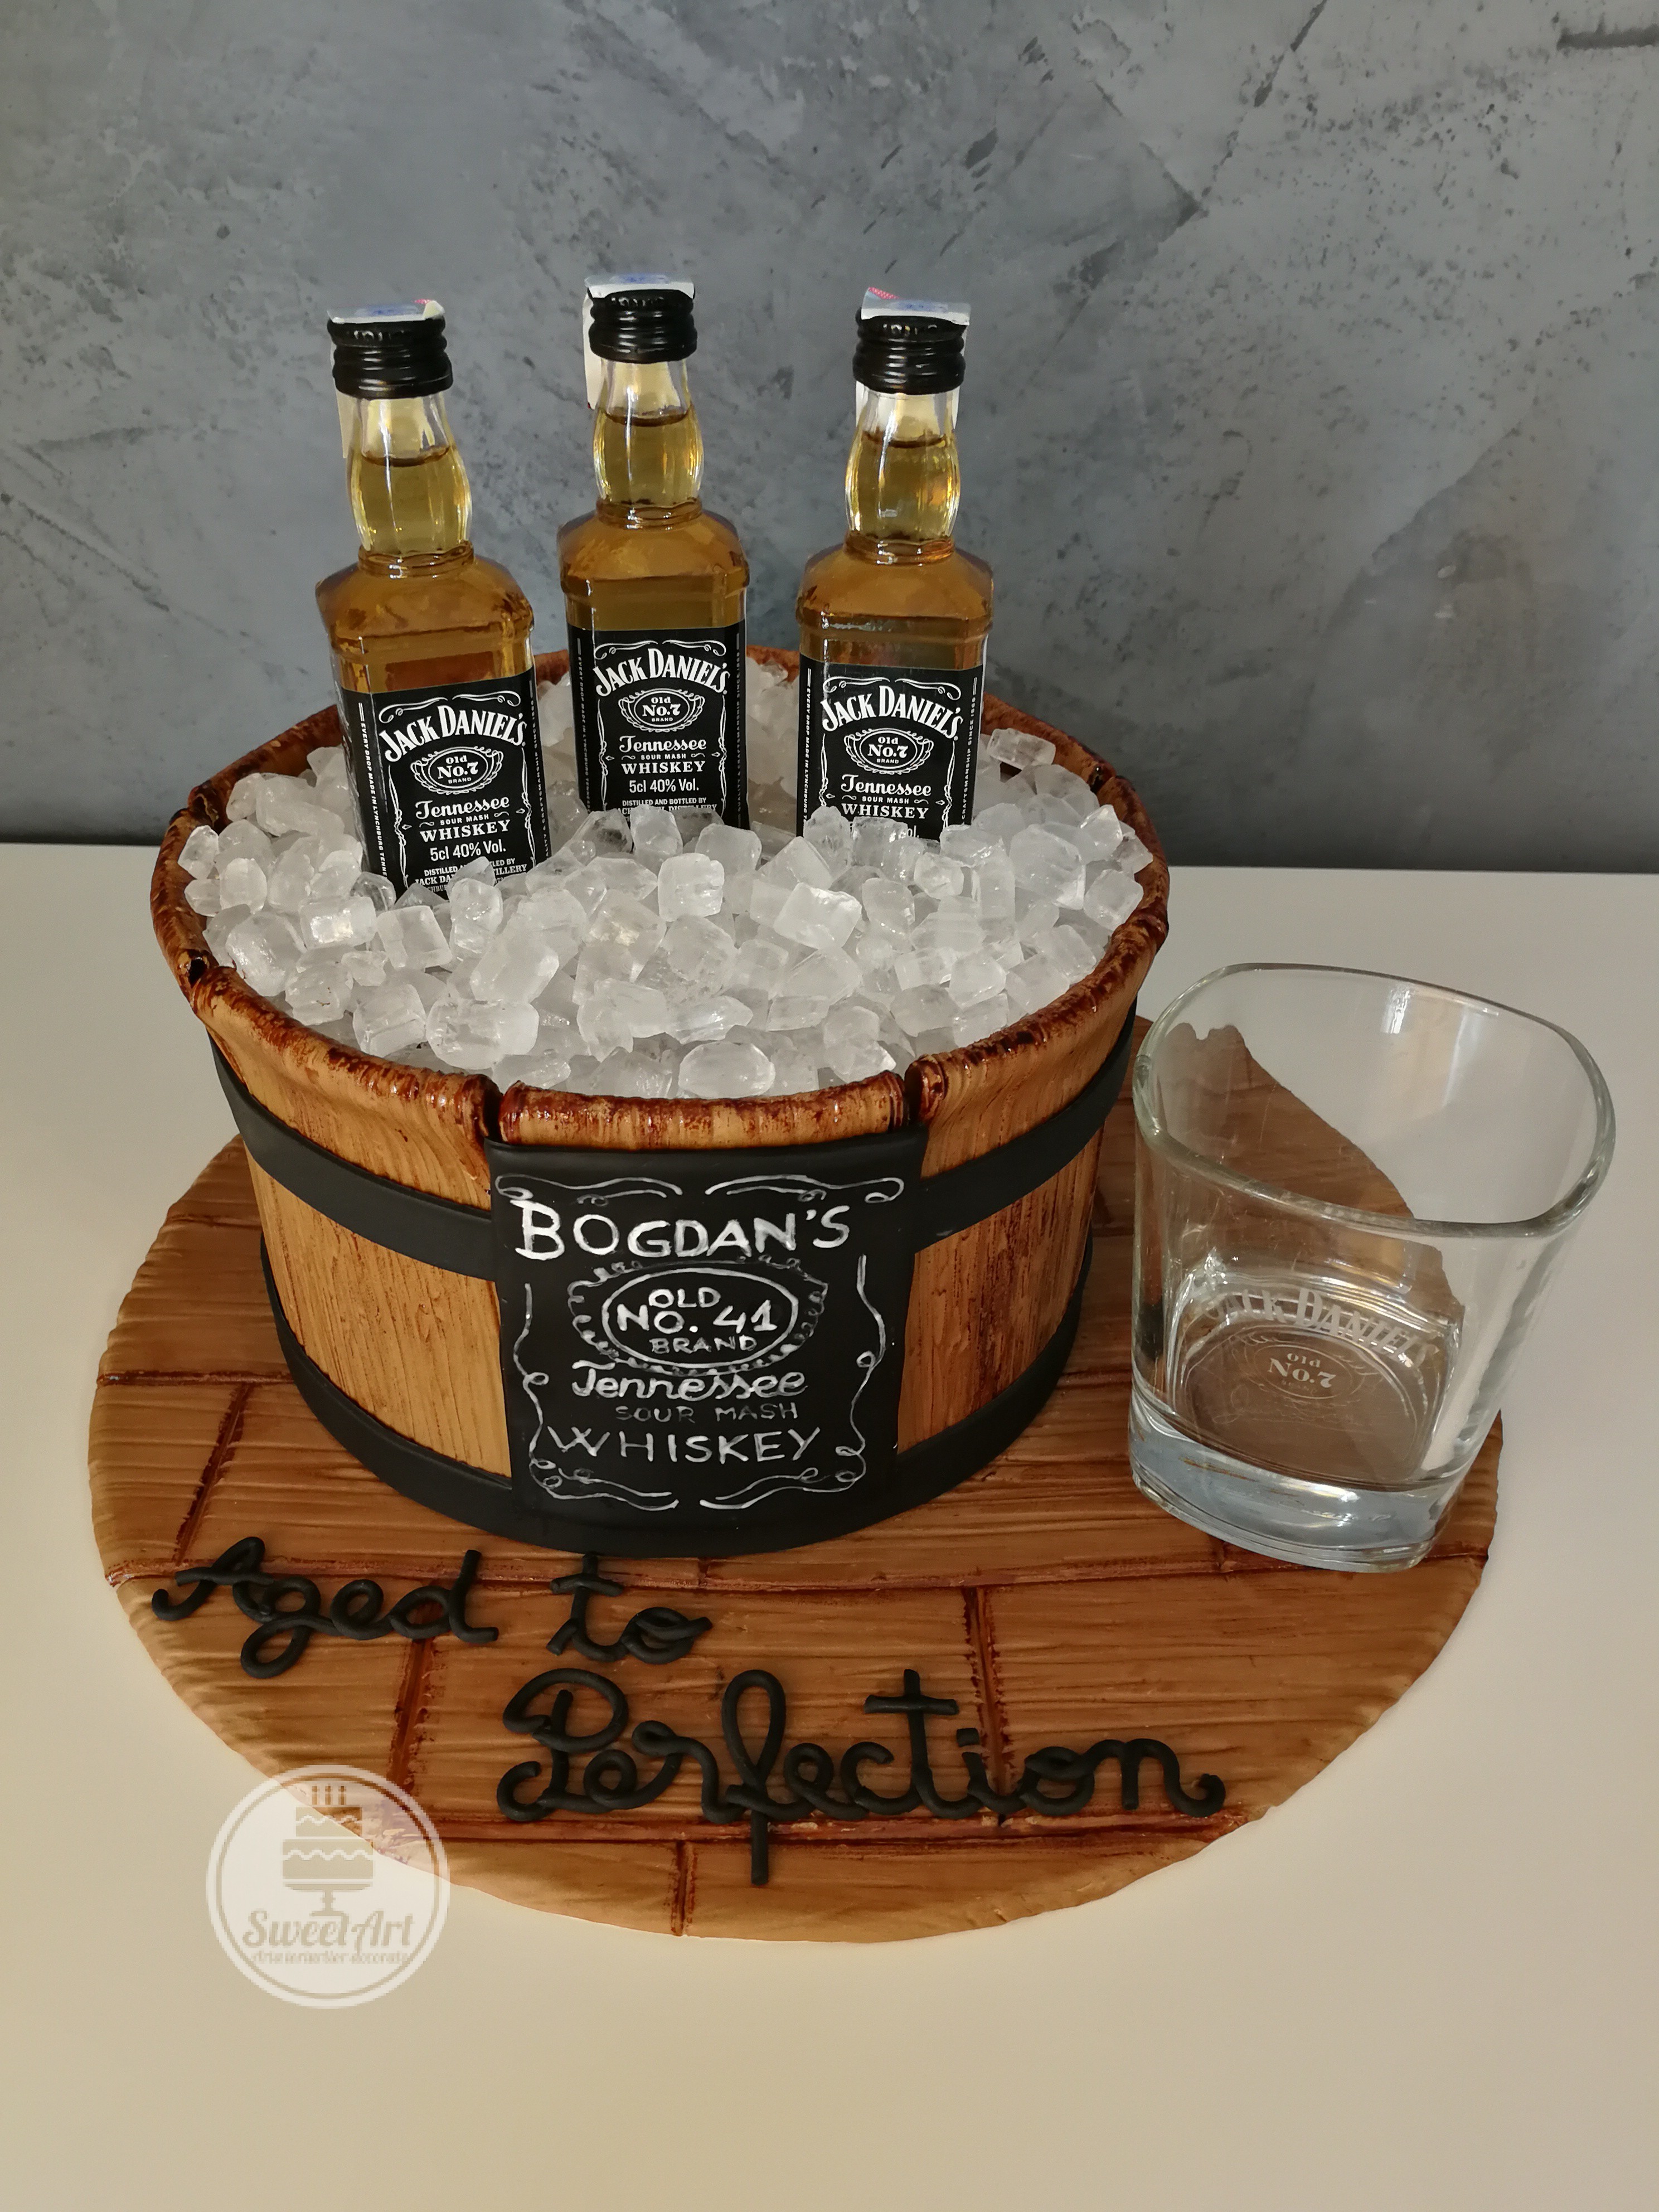 Tort frapieră de lemn cu gheață din zahăr și whiskey Jack Daniel's pe platou de lemn, etichetă pictată manual